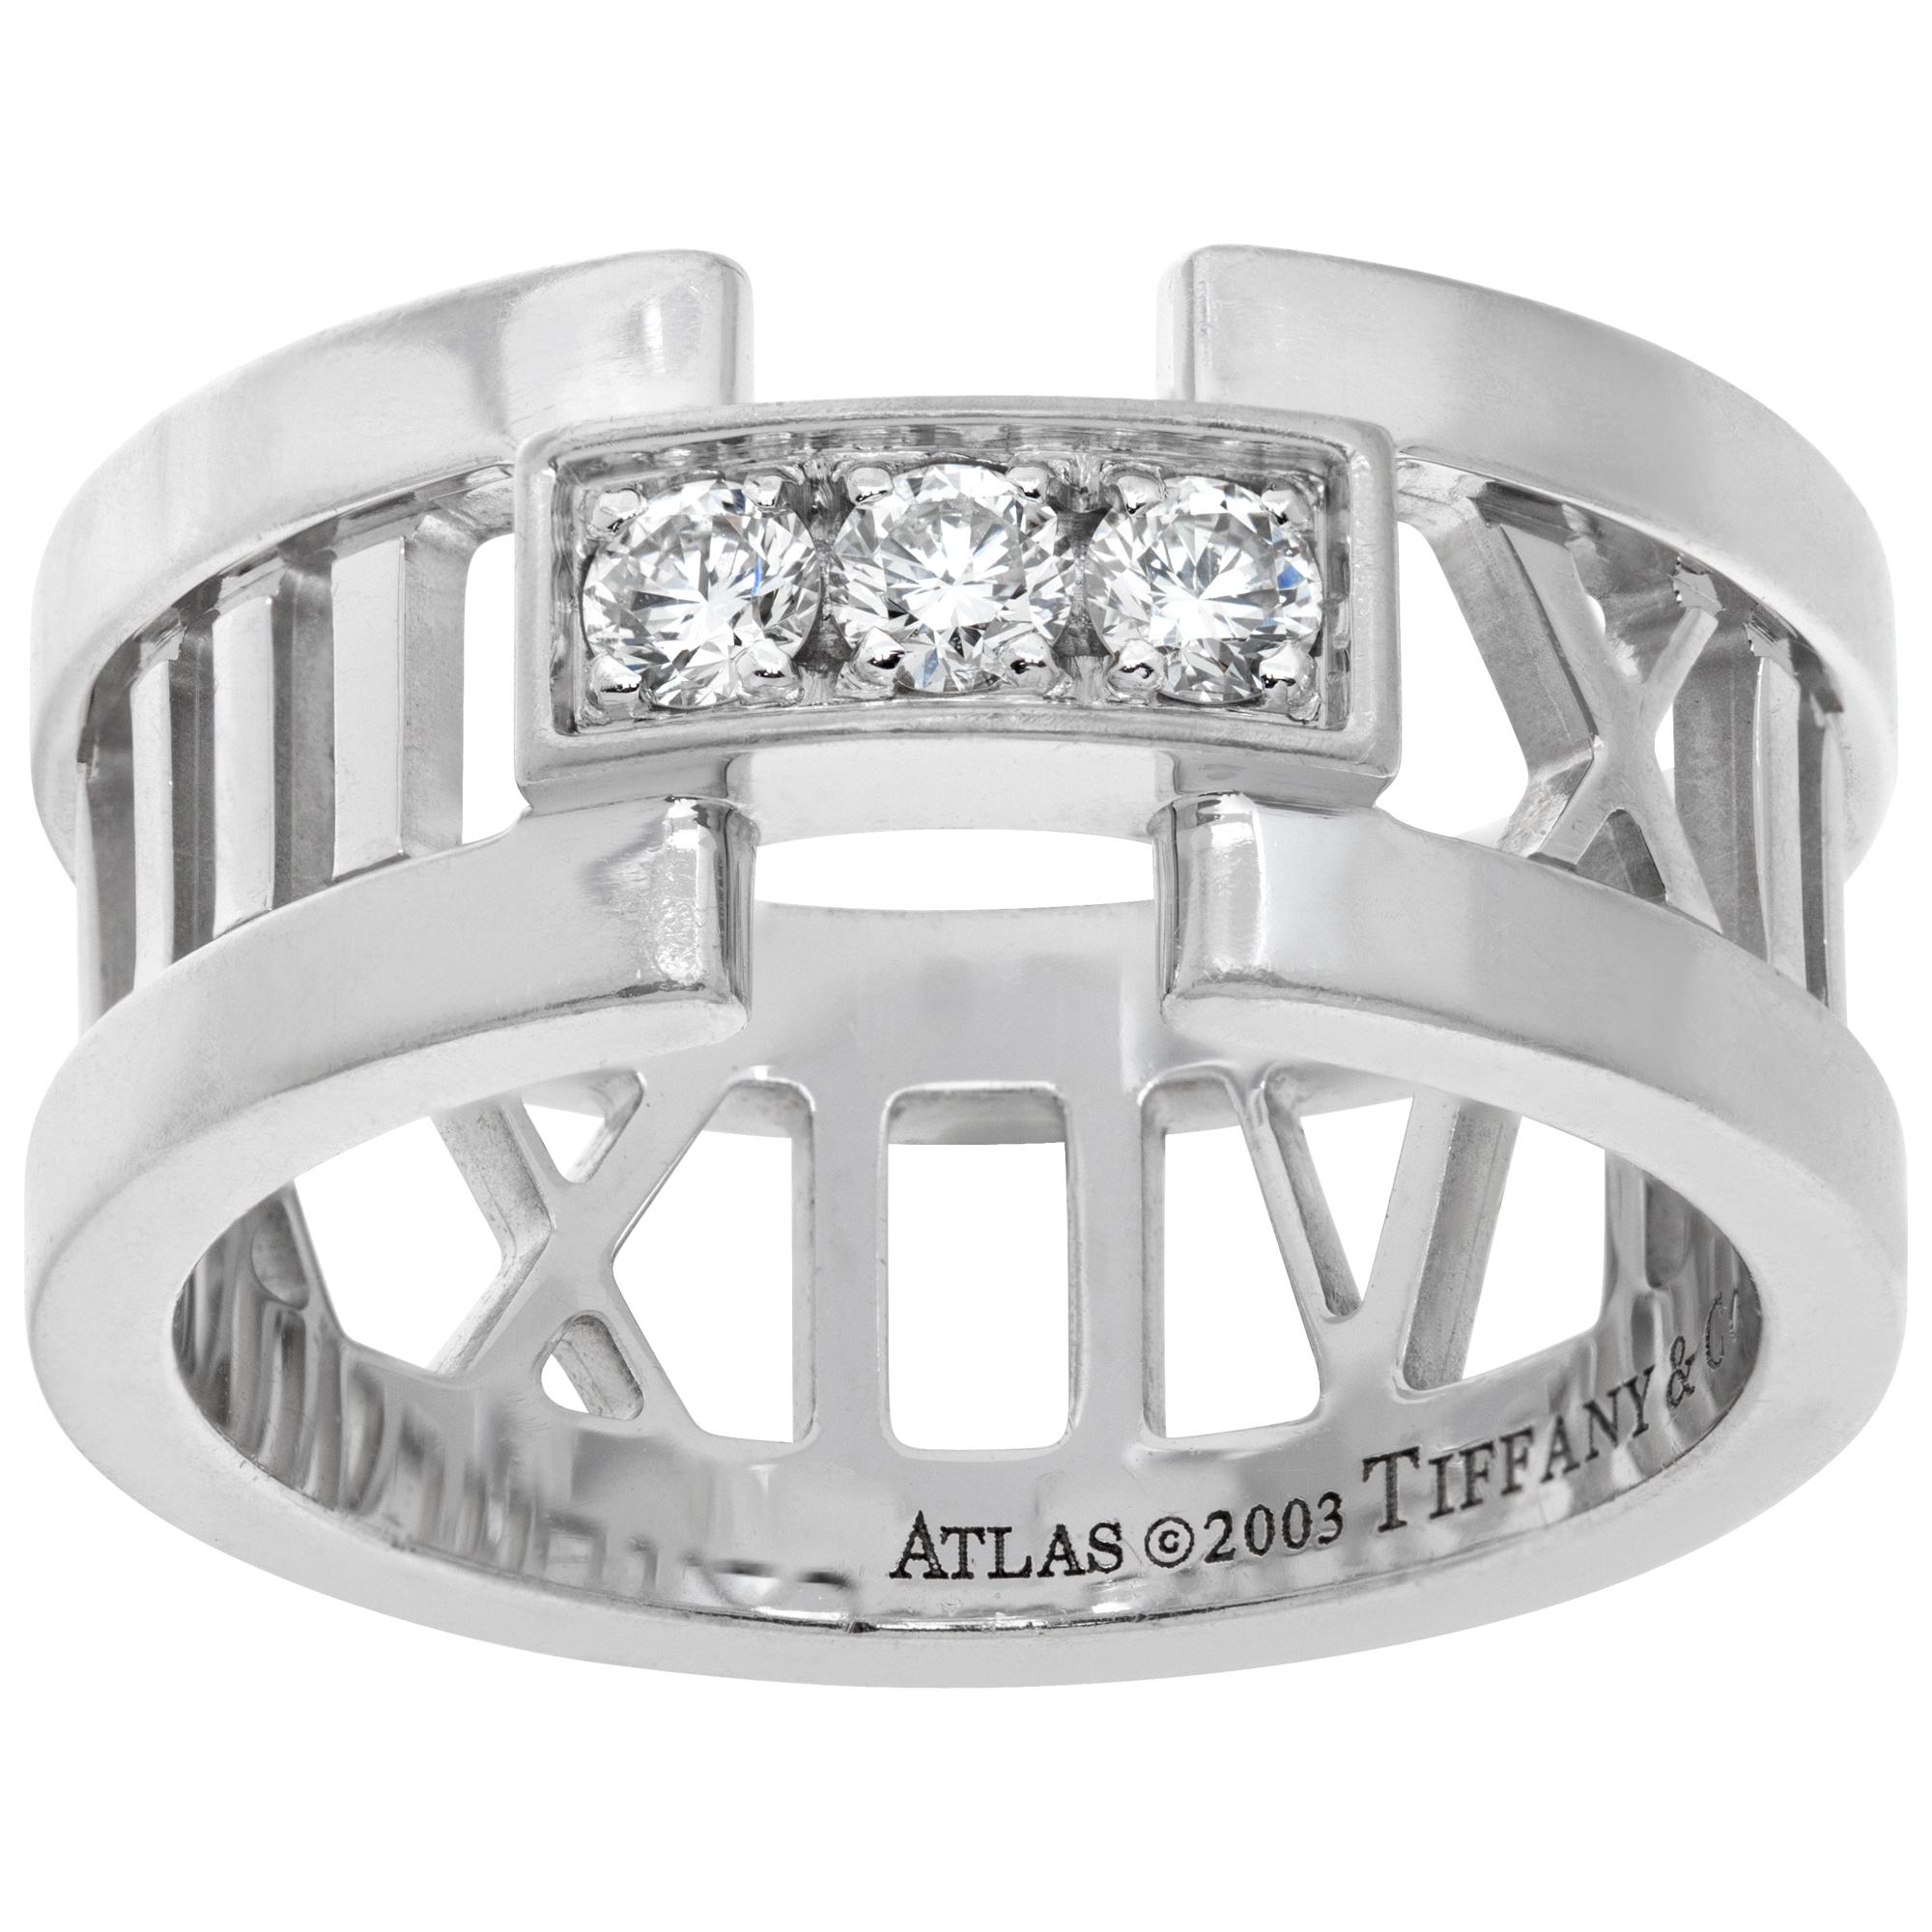 Tiffany & Co. Anello Atlas con 3 diamanti in oro bianco